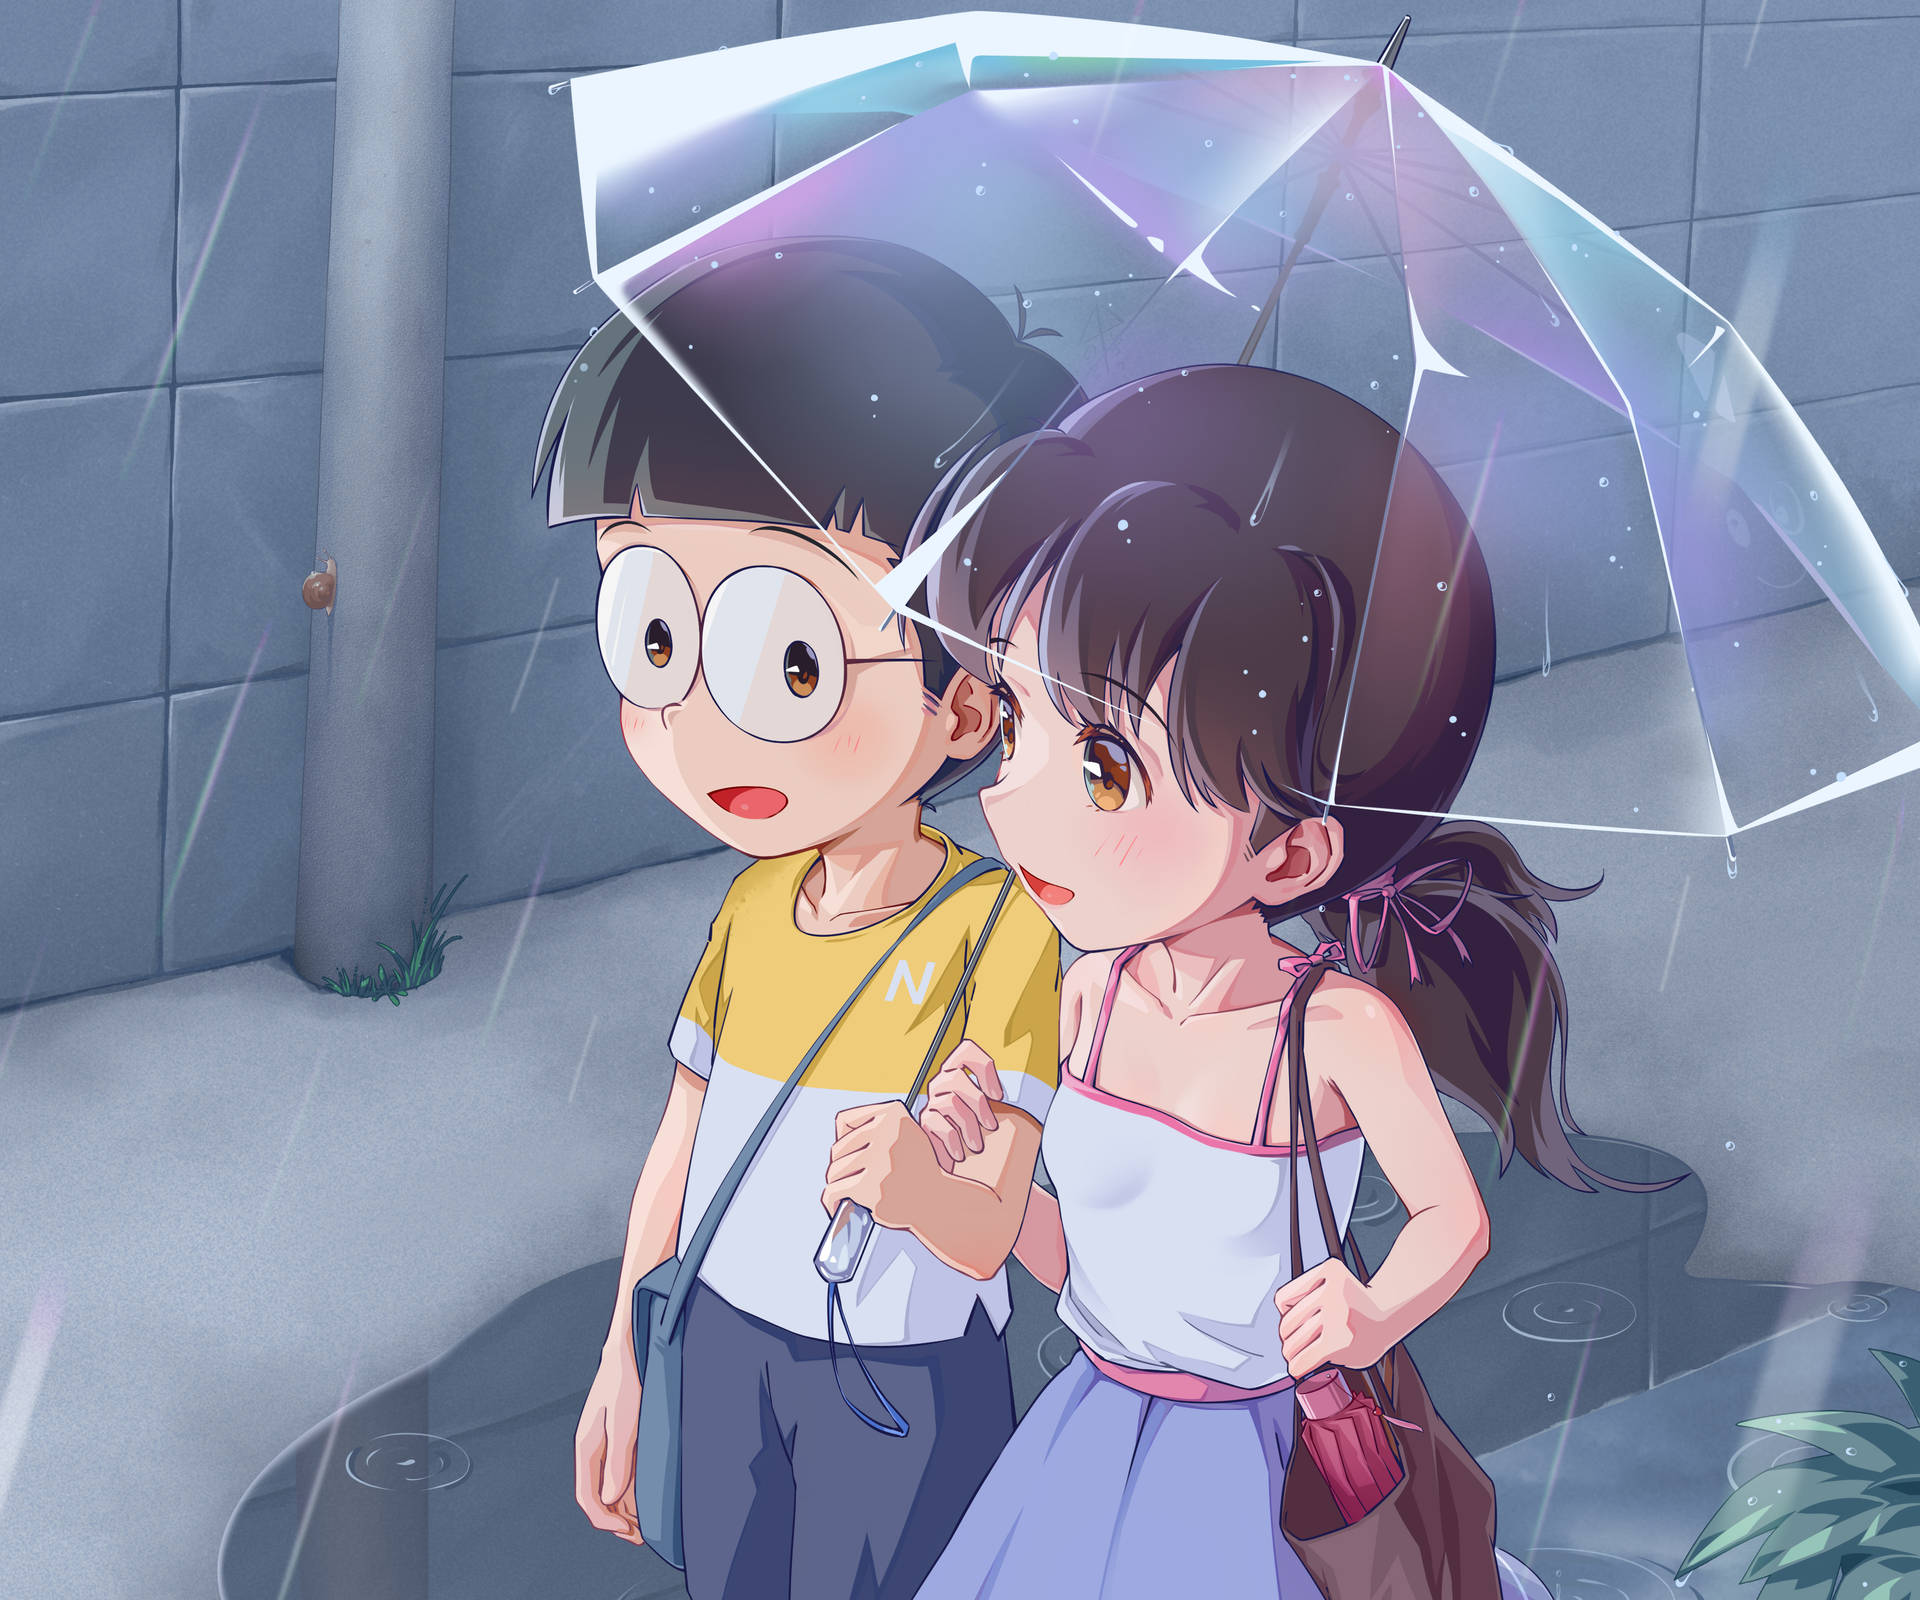 Free Nobita Shizuka Hd Wallpaper Downloads, [100+] Nobita Shizuka Hd  Wallpapers for FREE 